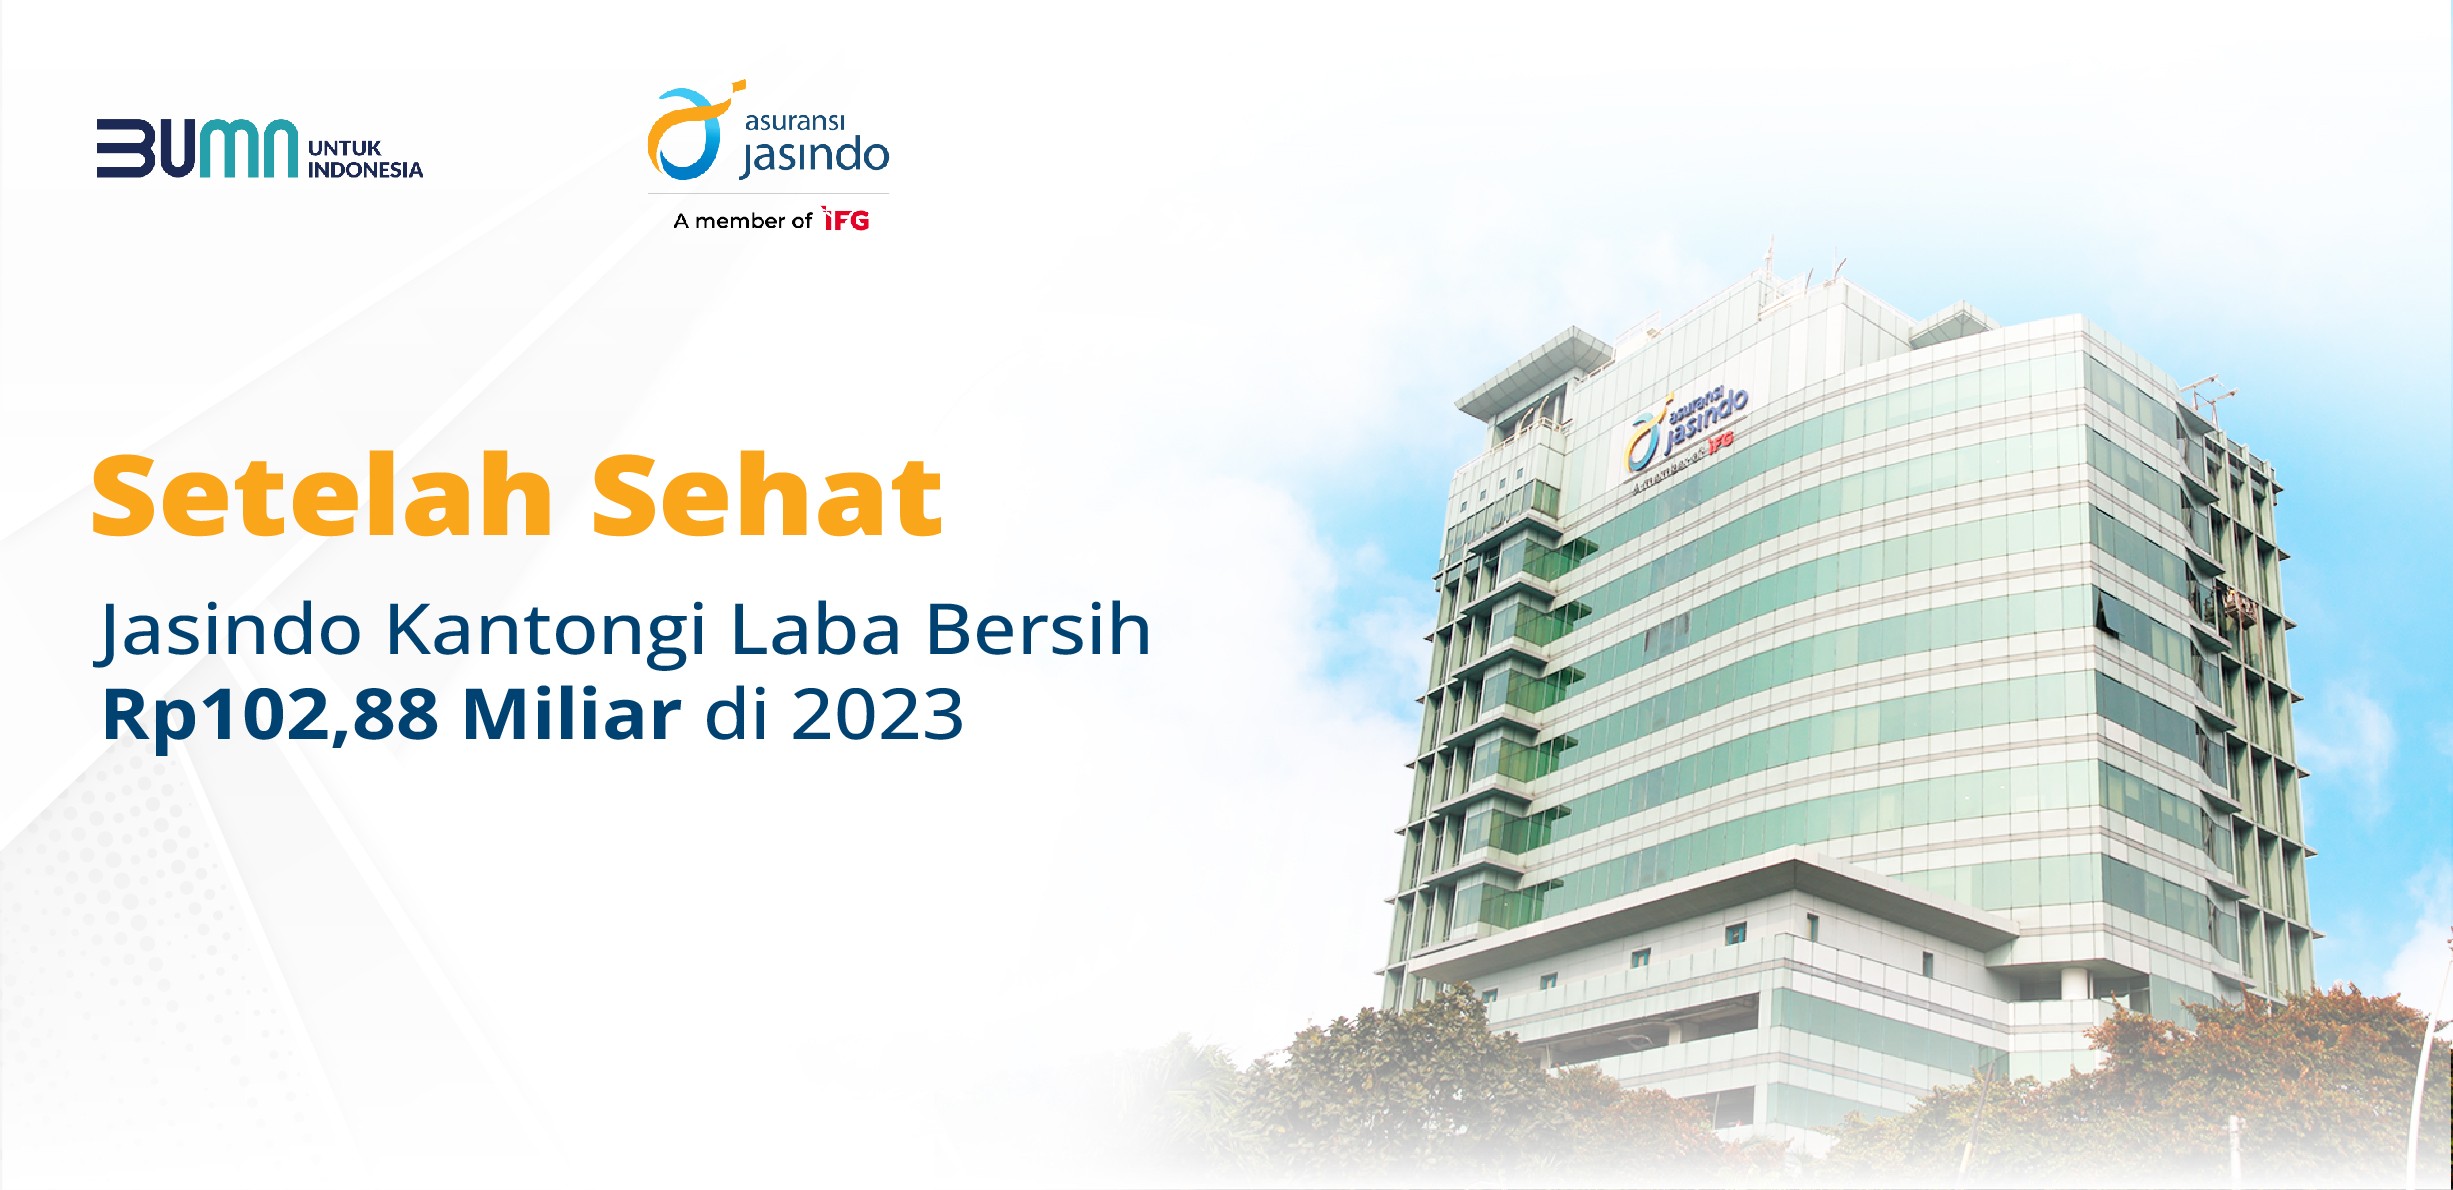 Setelah Sehat Jasindo Kantongi Laba Bersih Rp102,88 Miliar di 2023